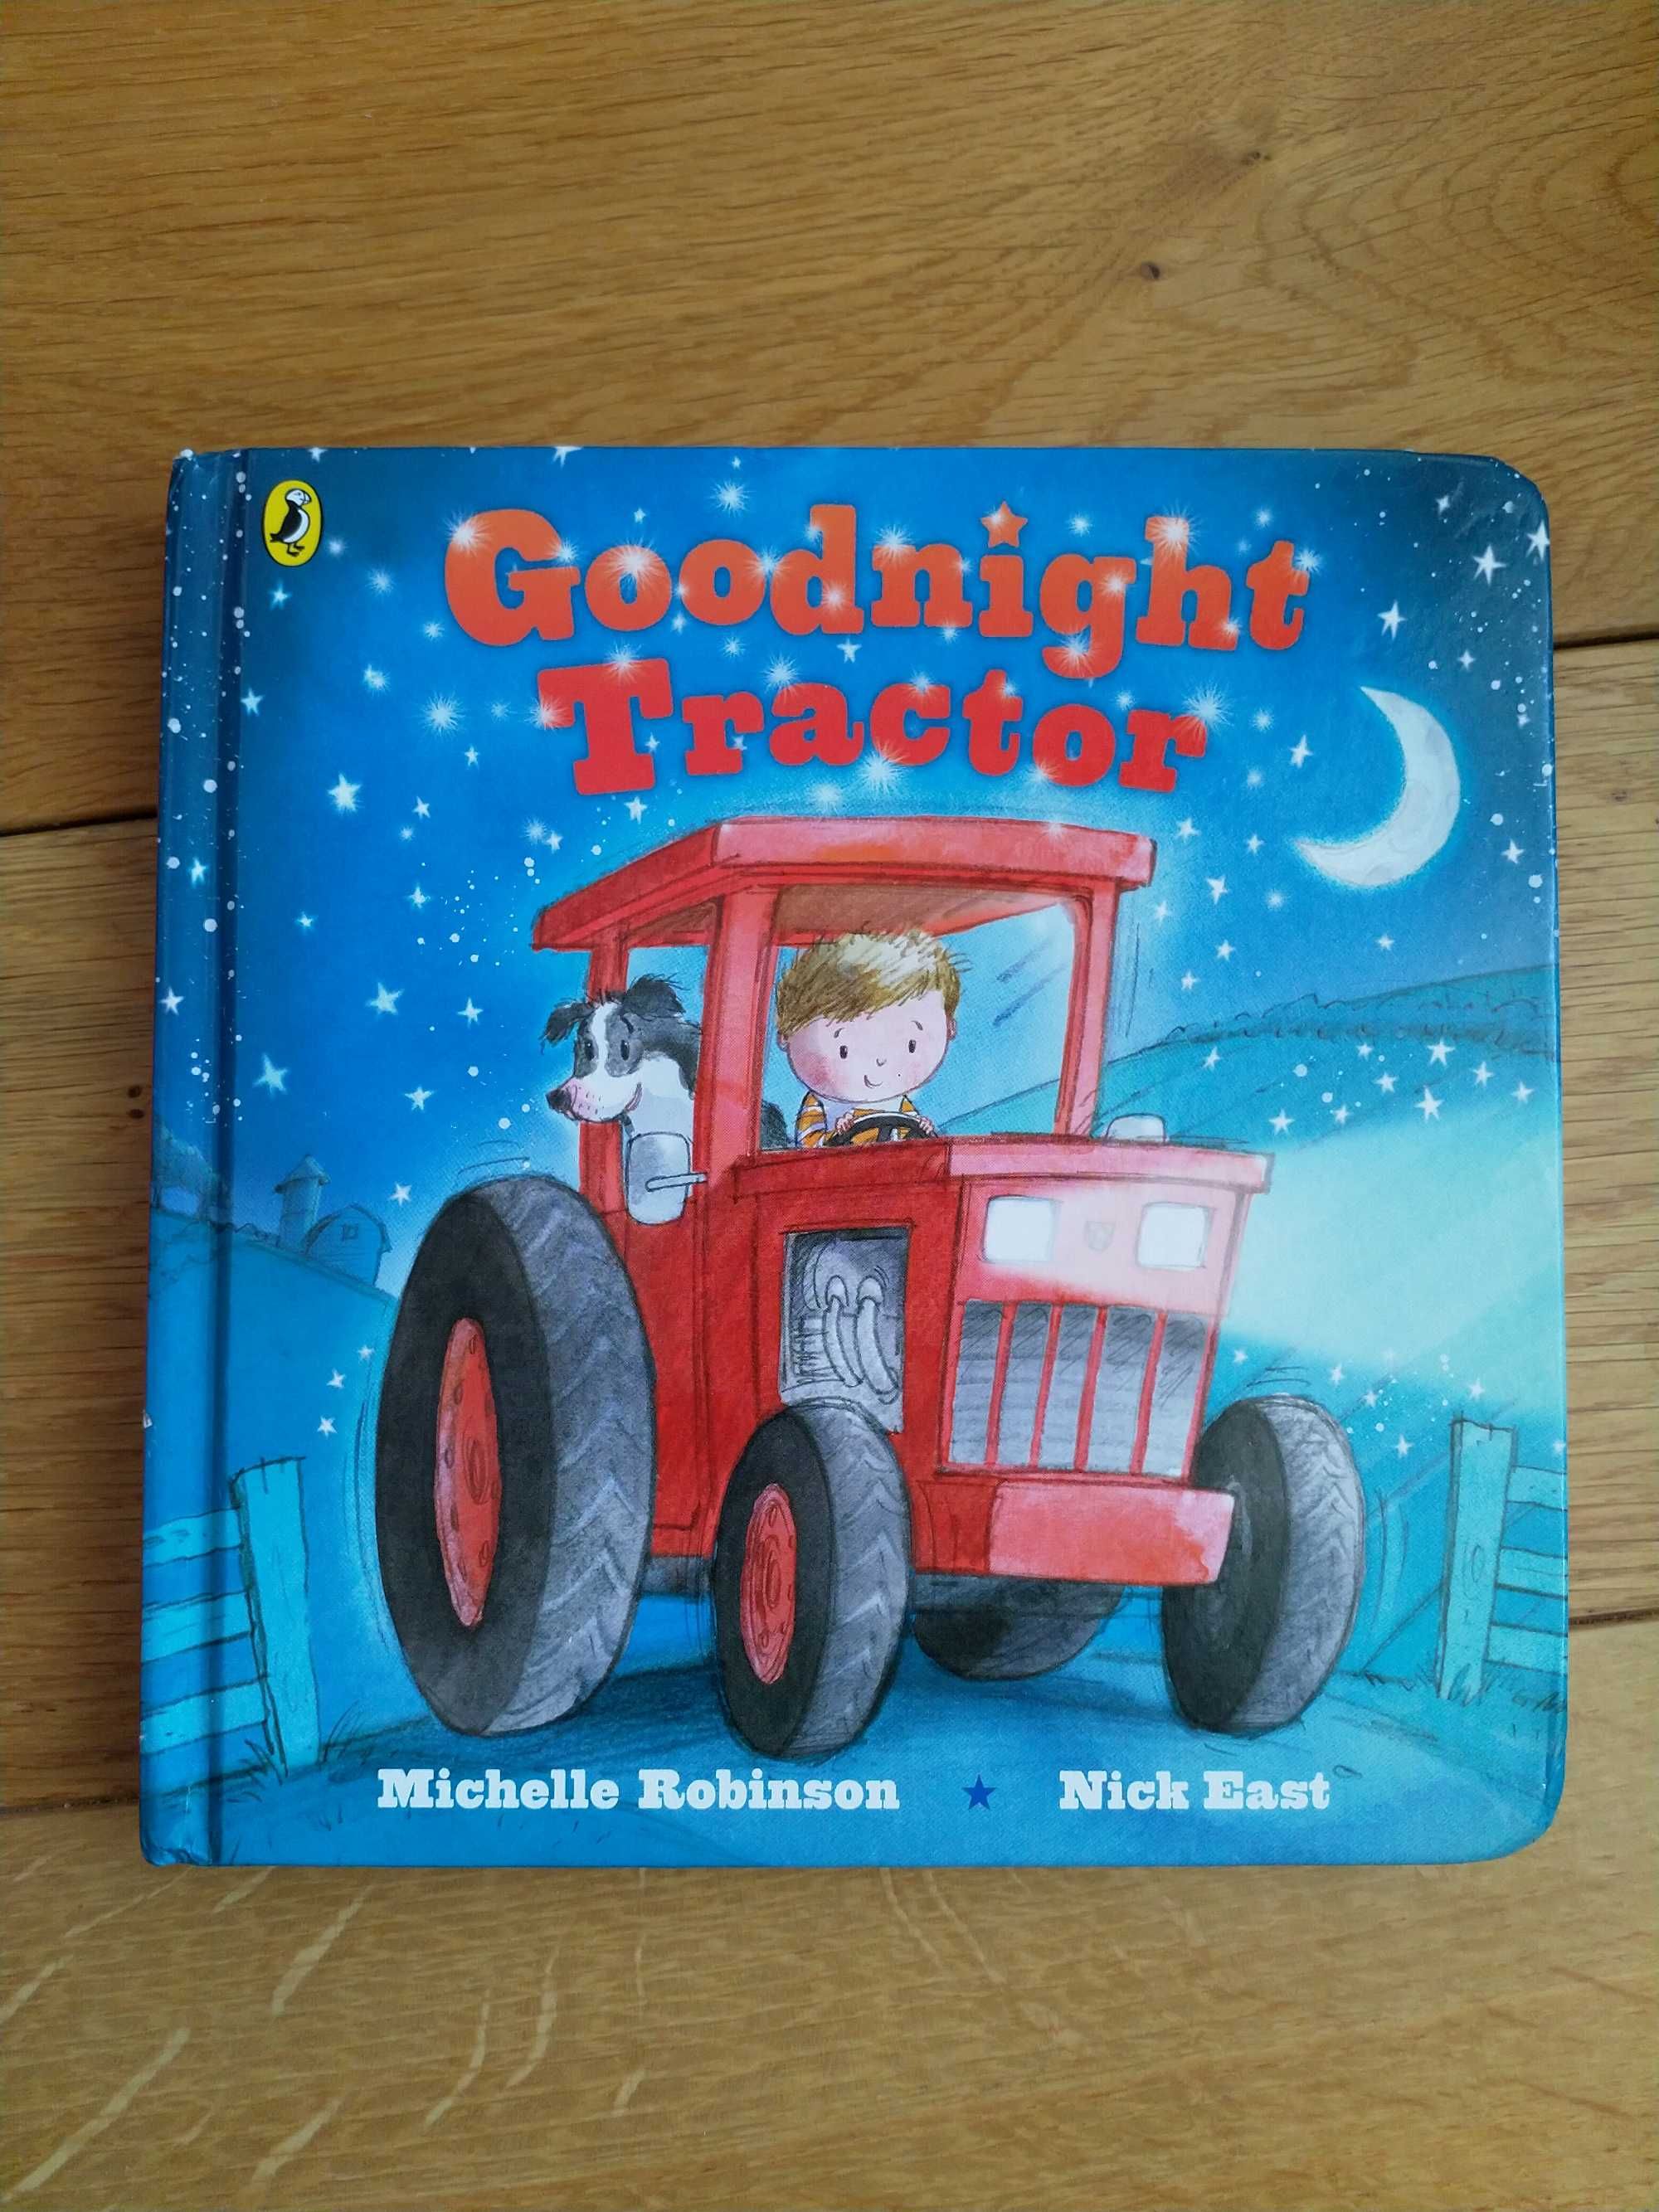 Książka po angielsku dla dzieci
Goodnight tractor